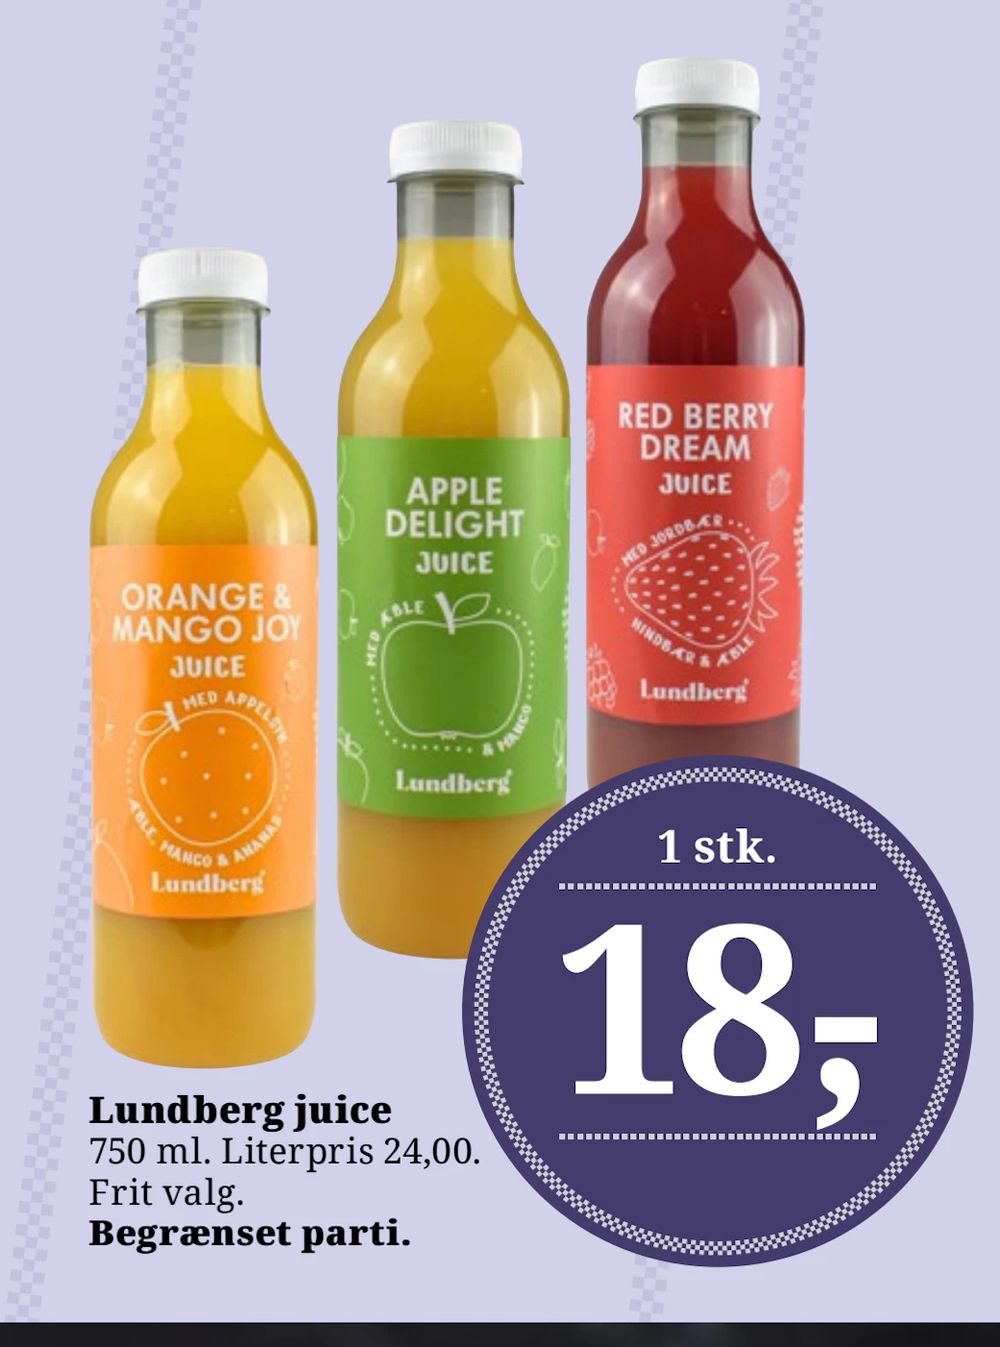 Tilbud på Lundberg juice fra Brugsen til 18 kr.